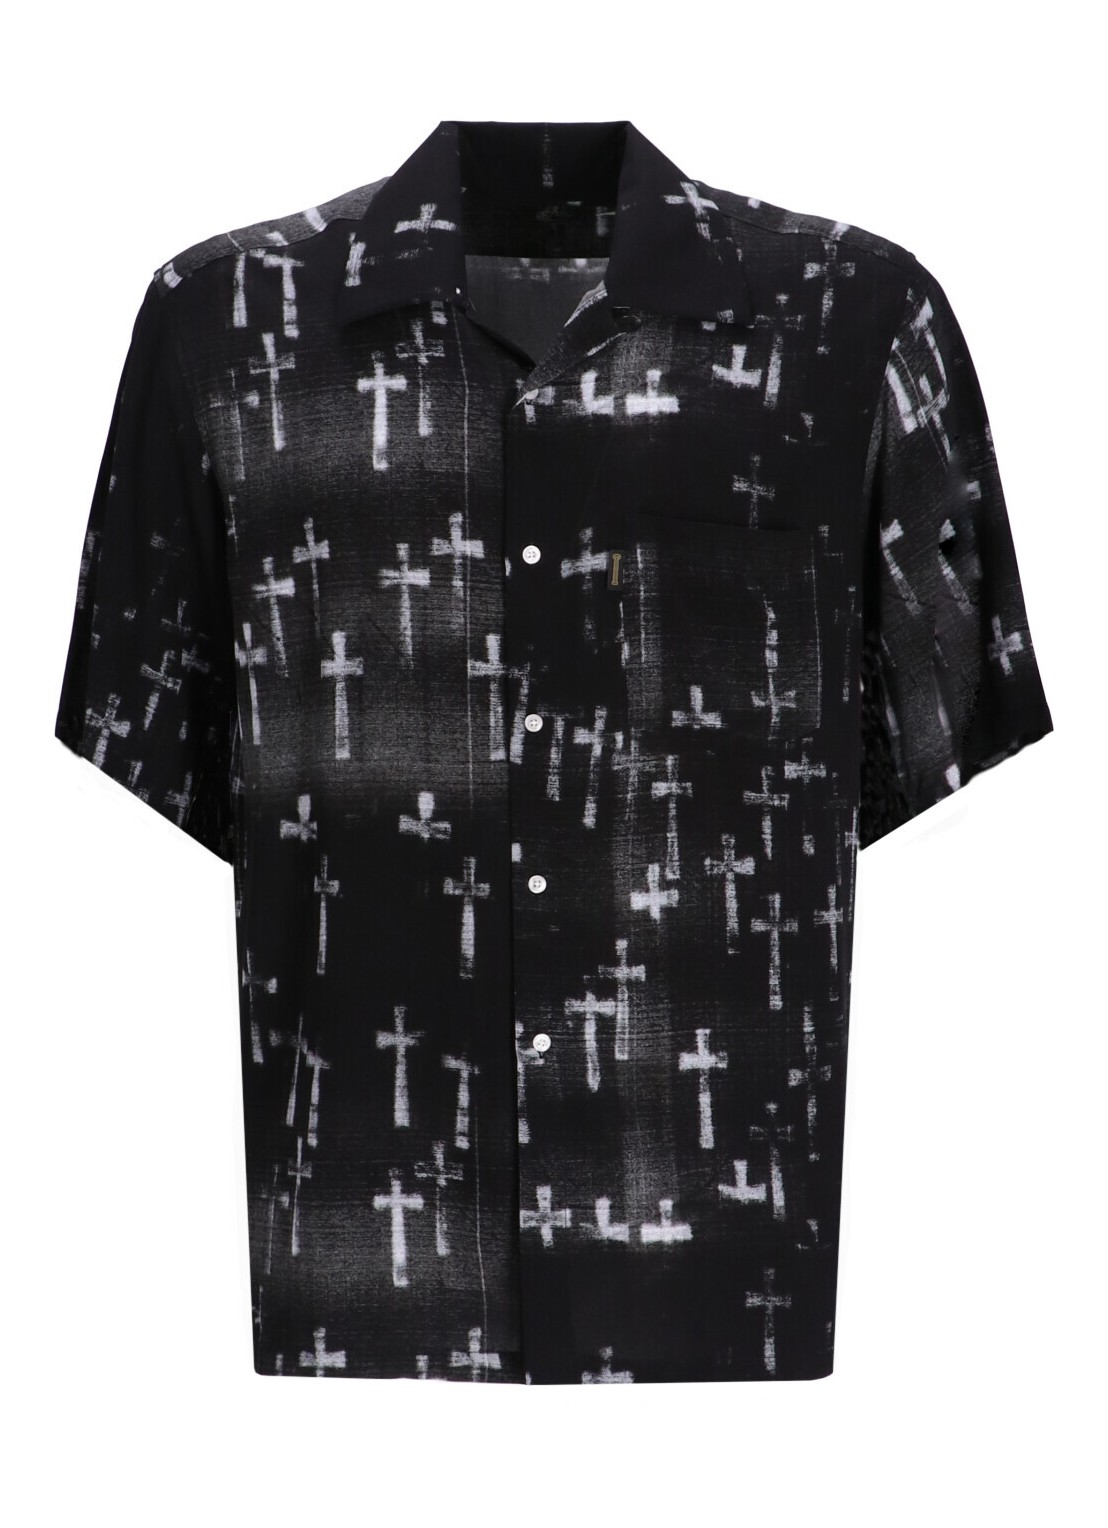 Camiseria aries shirt mangraveyard hawaiian shirt - suar40100x blk talla L
 